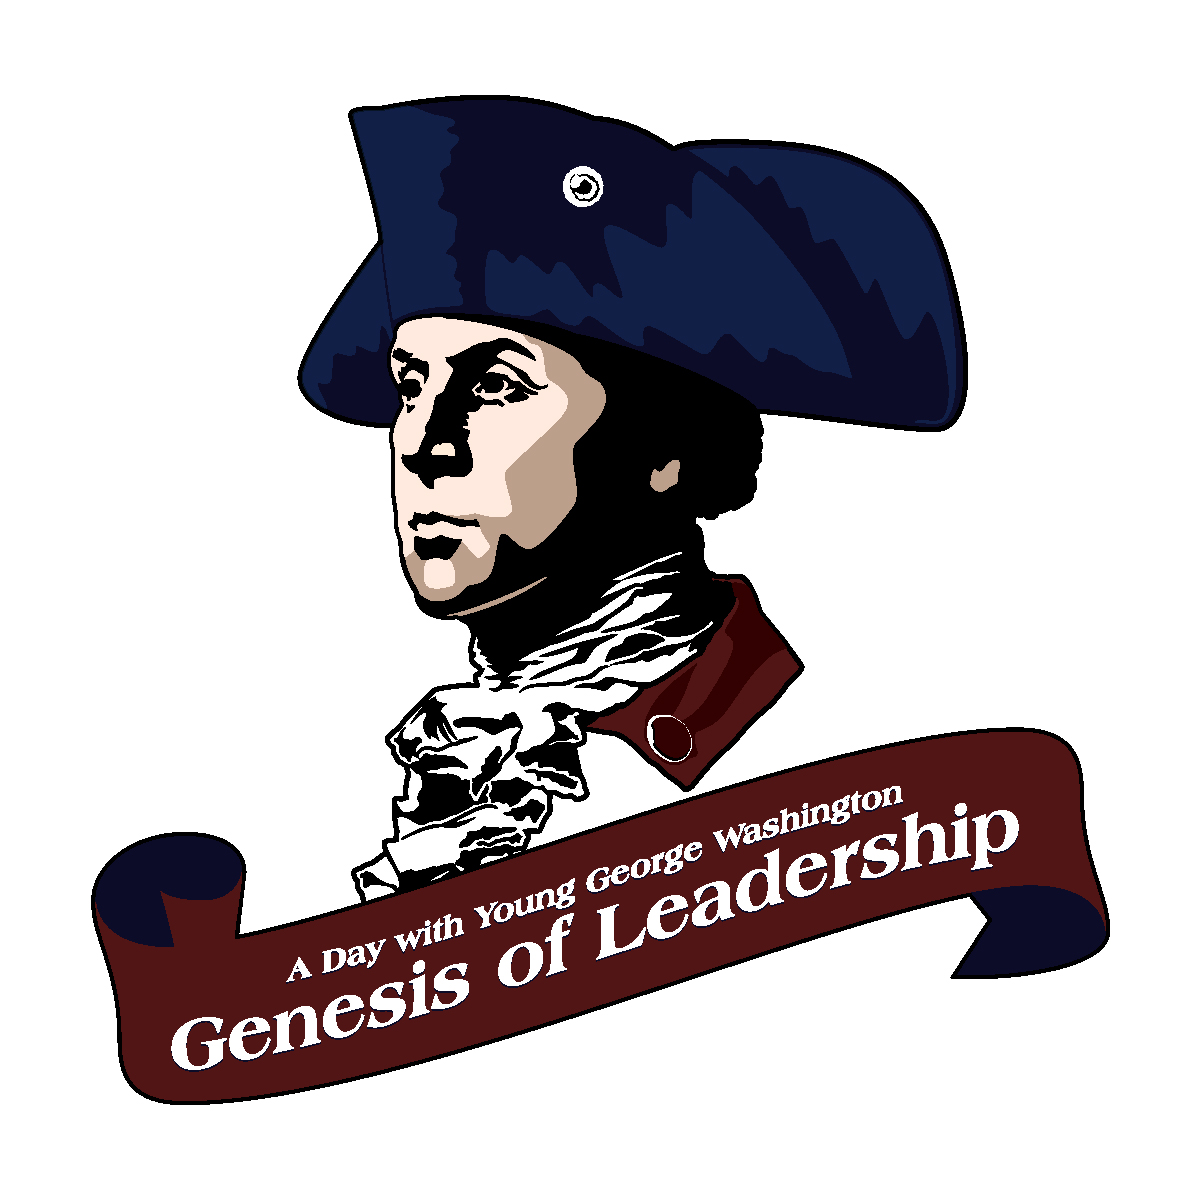 Fort Ligonier Leadership Institute “Genesis of Leadership”